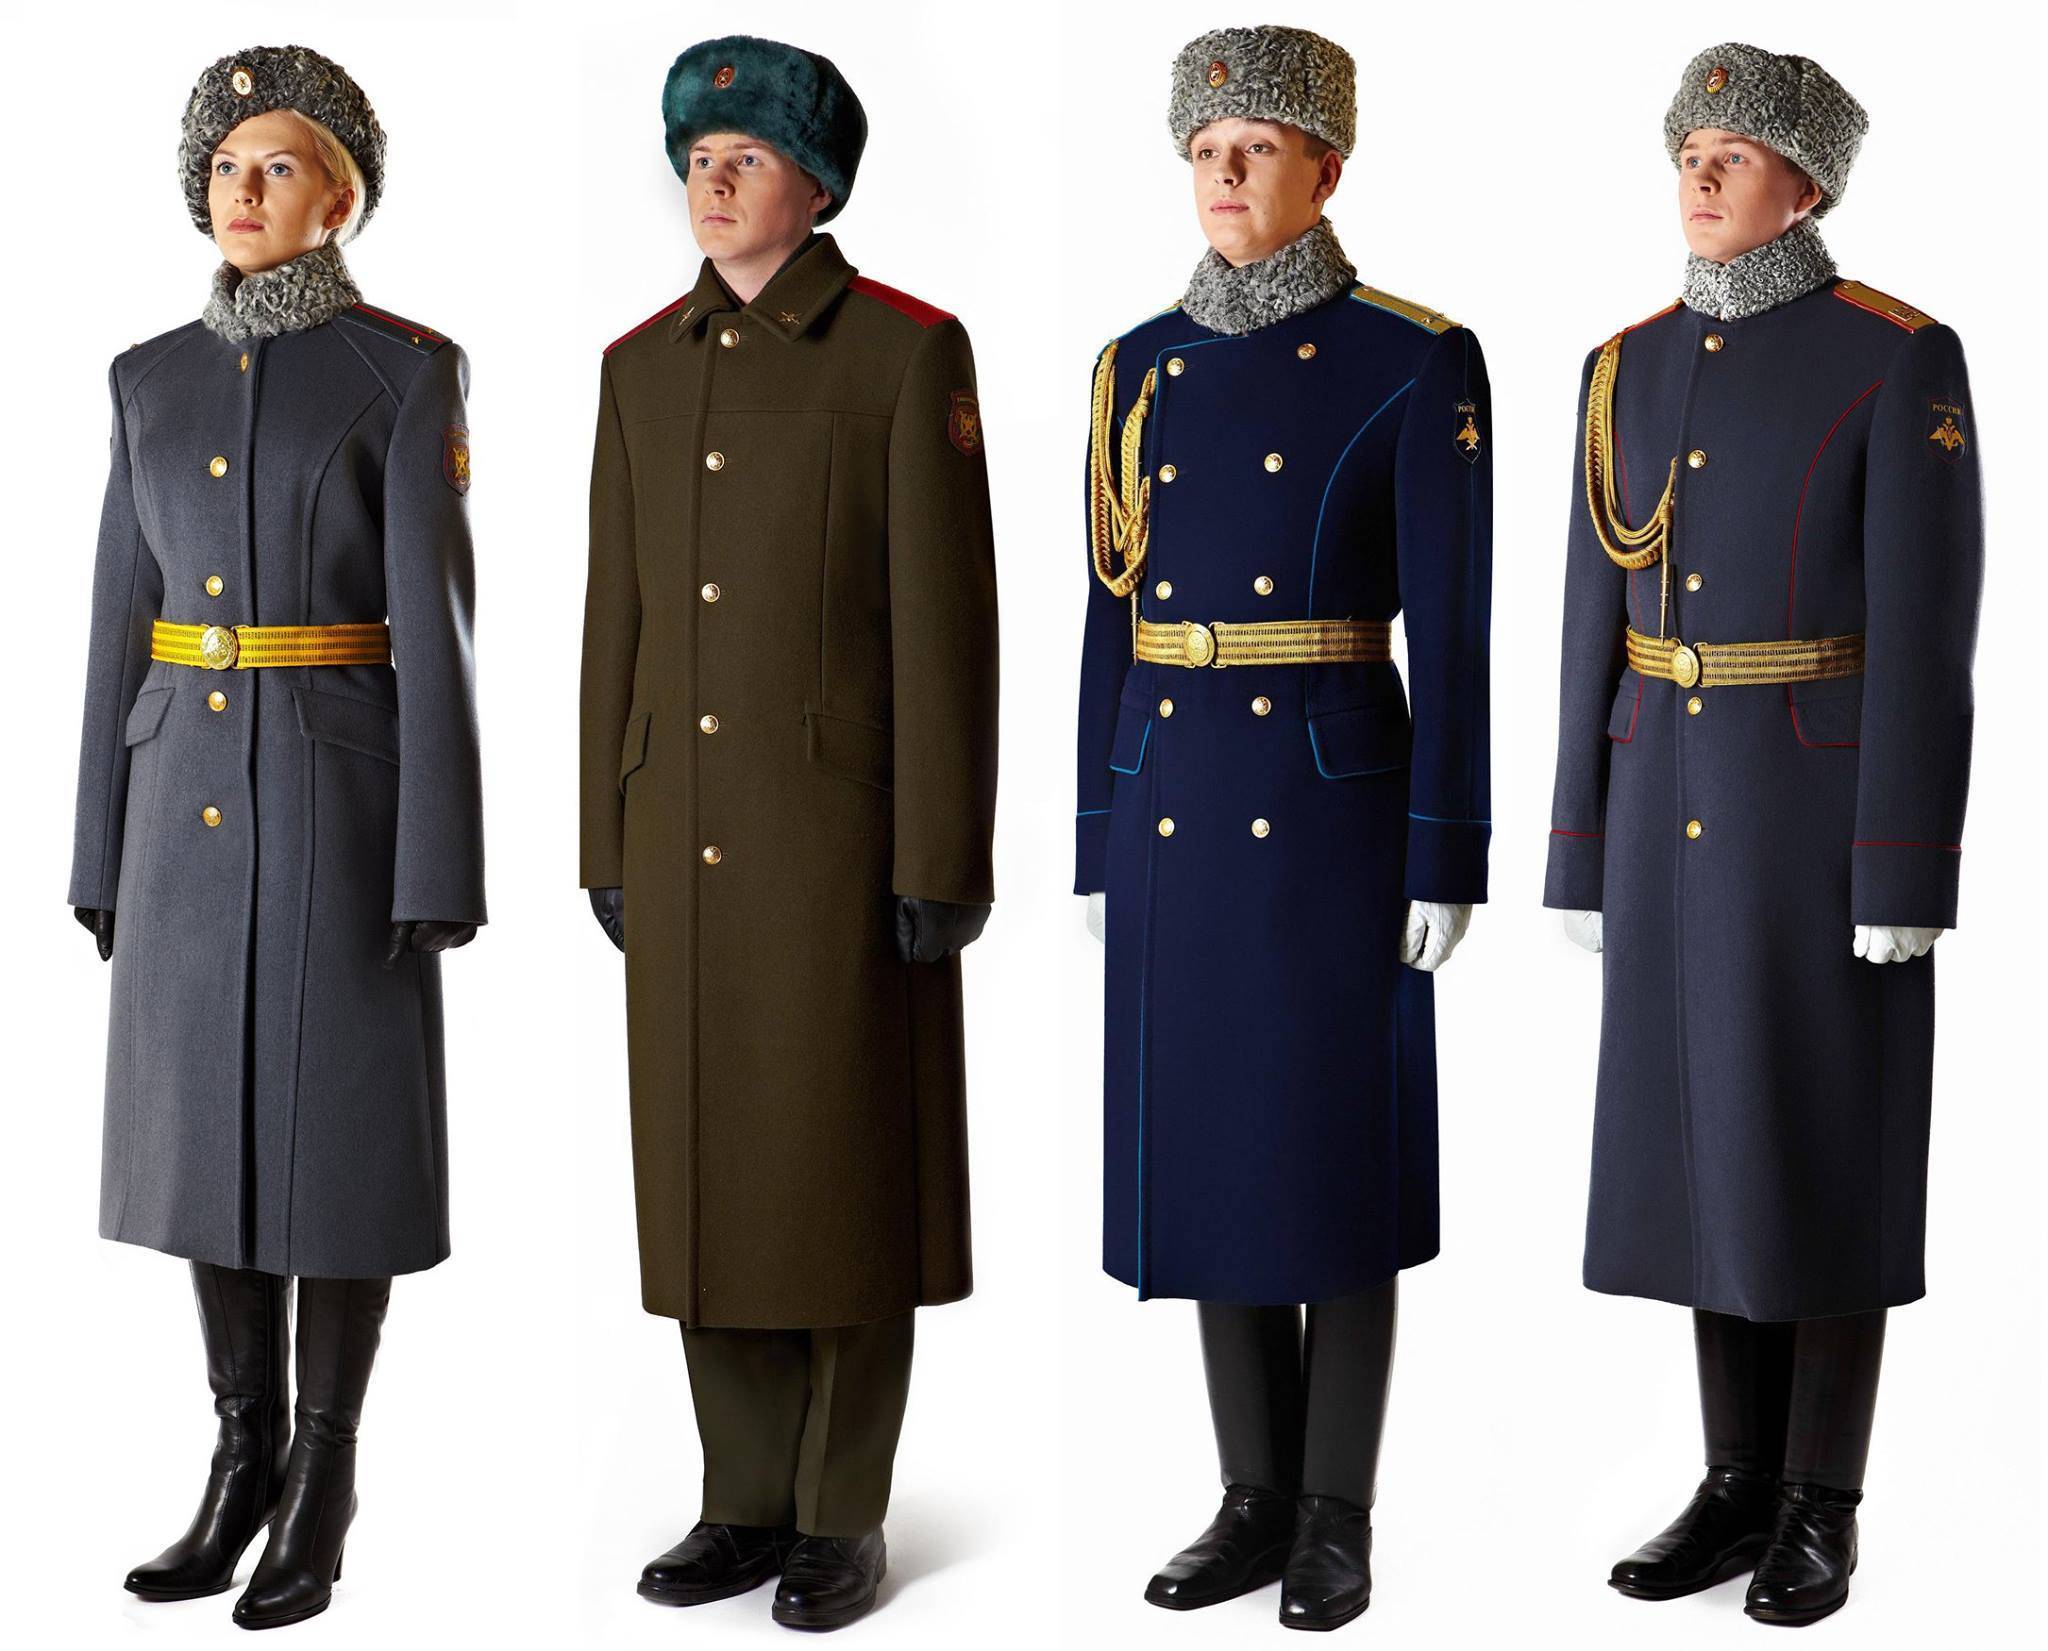 Офисная форма одежды для военнослужащих: комплектация и внешний вид, правила ношения